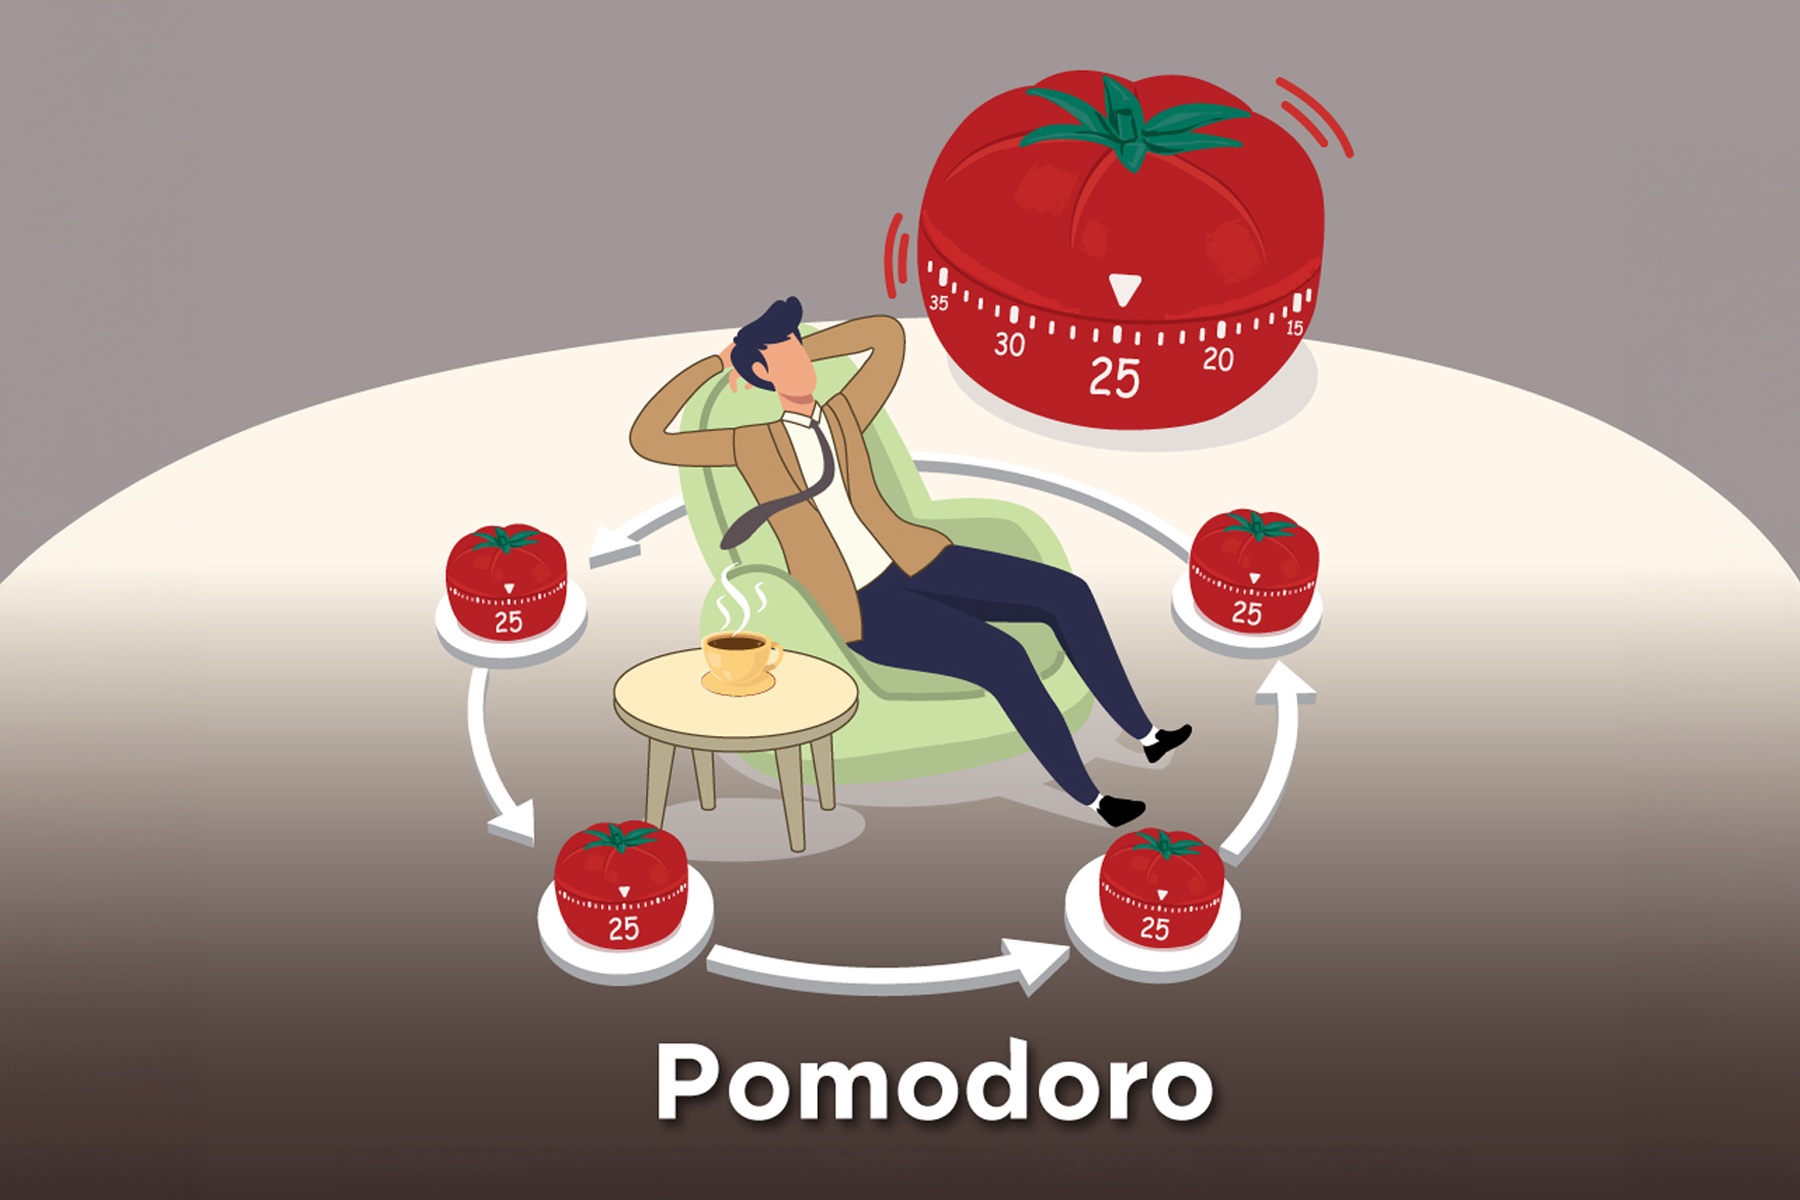 Pomodoro เทคนิคทำงานและพักอย่างมีประสิทธิภาพที่ผู้บริหารธุรกิจควรลอง